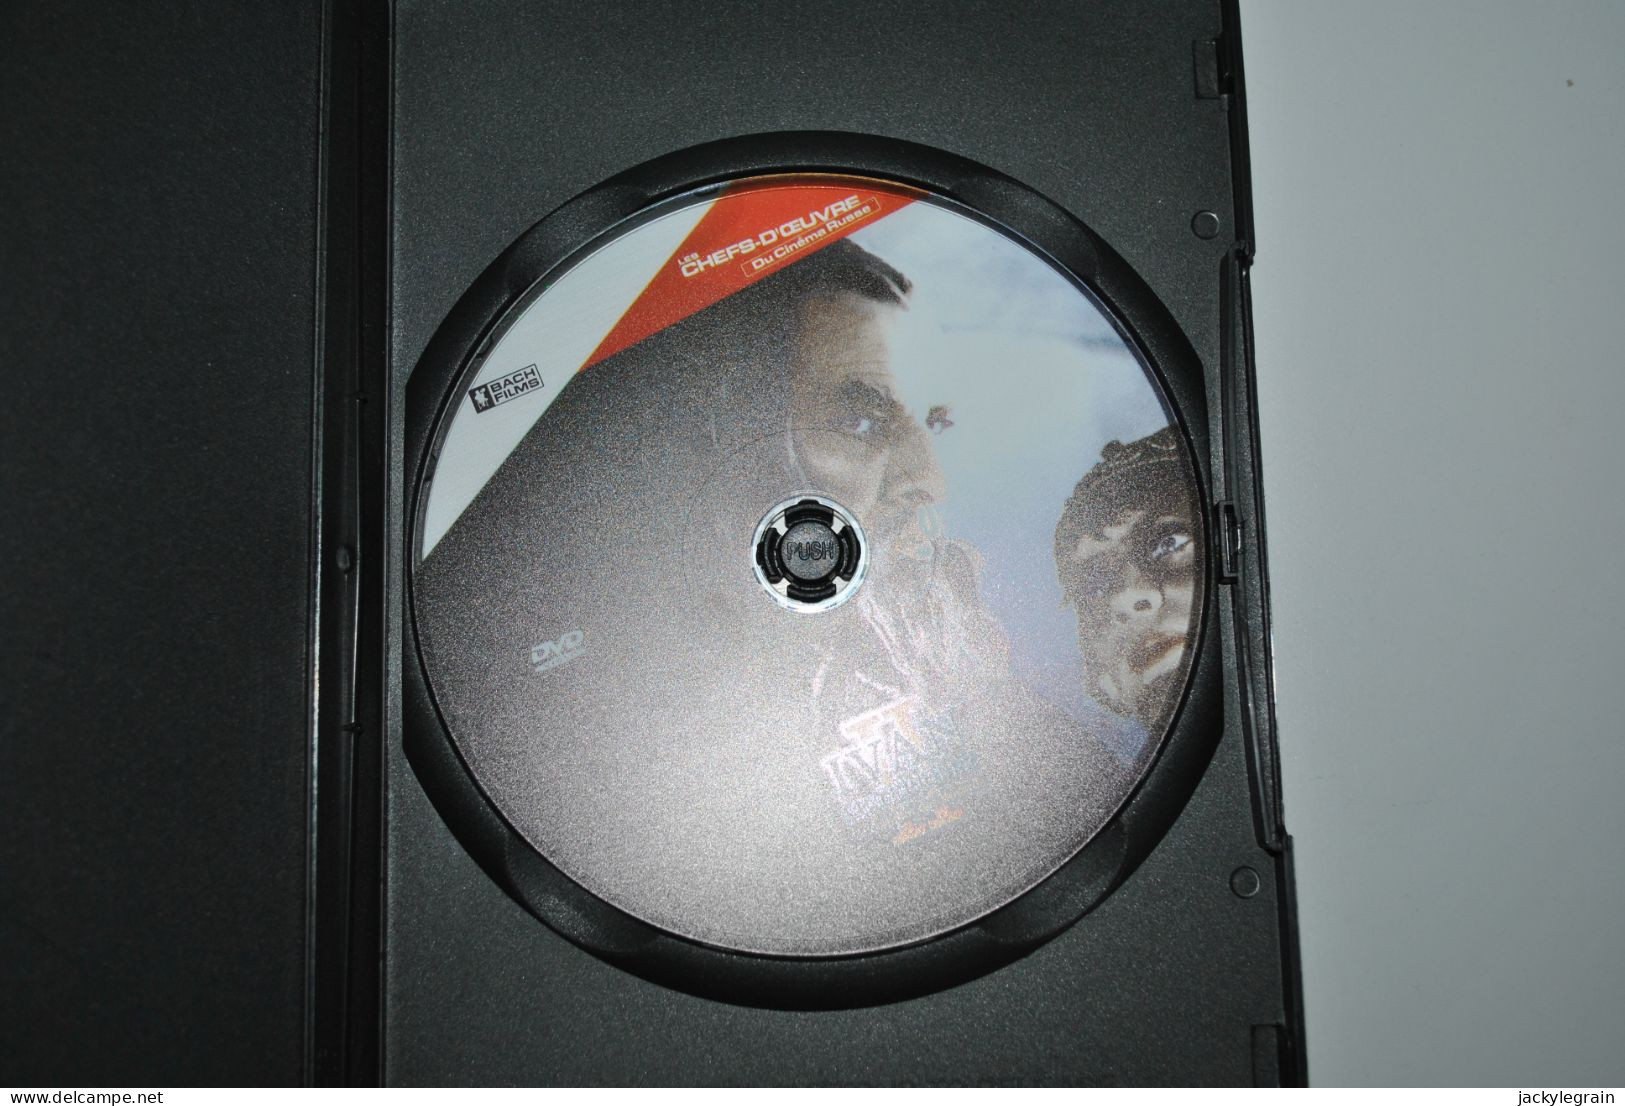 DVD "Ivan Terrible 2"/Eisenstein VO Russe/ST Français Comme Neuf Vente En Belgique Uniquement Envoi Bpost 3 € - Classiques